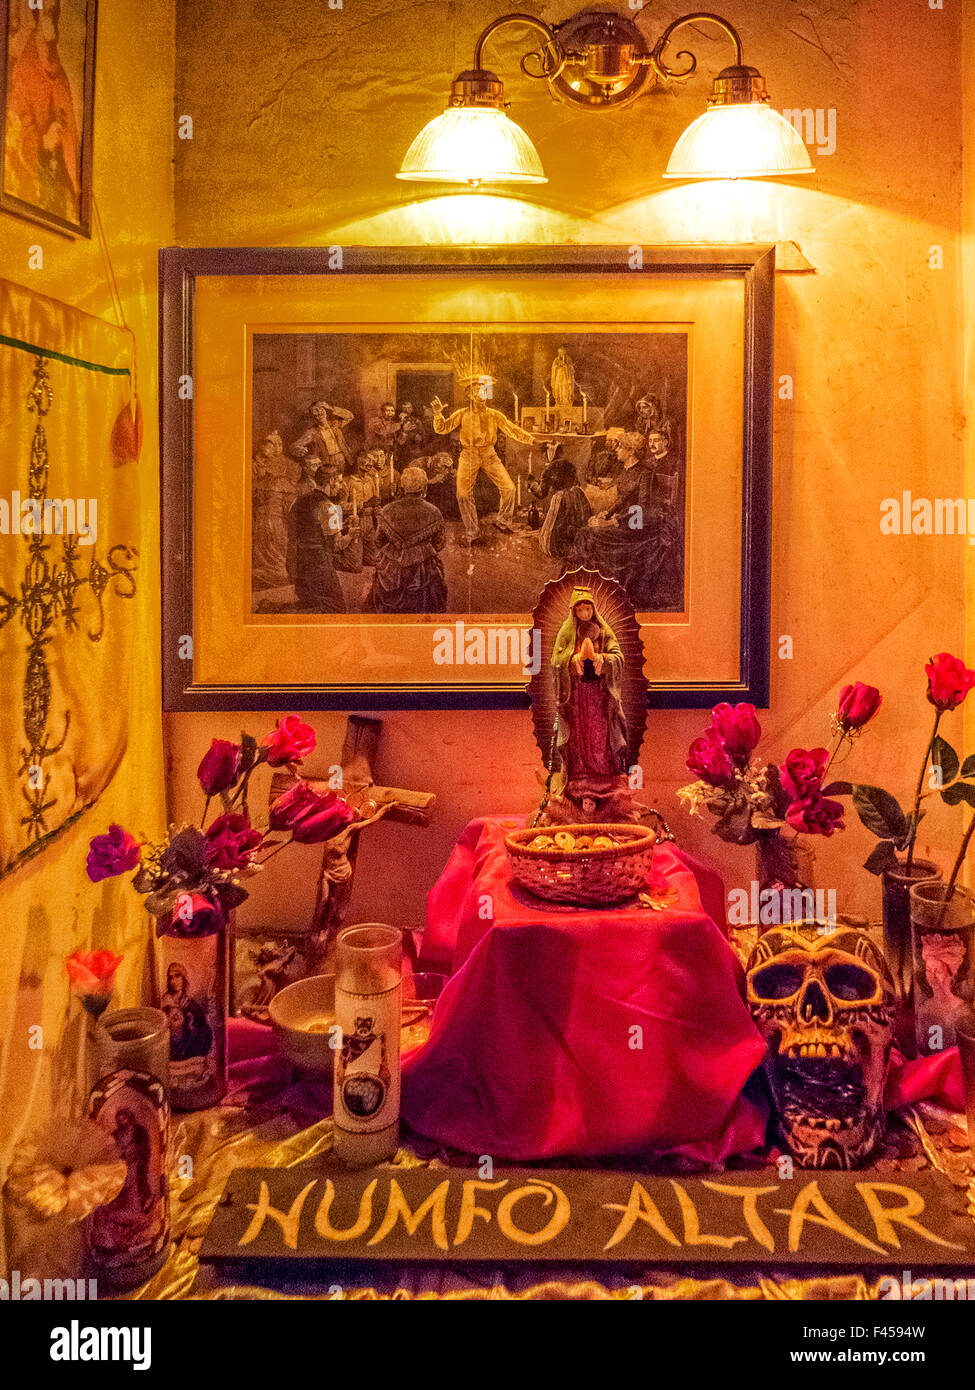 Presso il Museo Voodoo in New Orleans, un altare Humfo mescola il cristianesimo e Voodoo con santi cattolici che rappresentano gli spiriti voodoo. Nota incisione di cerimonia voodoo, statua di Maria, rose artificiali e modello di cranio. Foto Stock